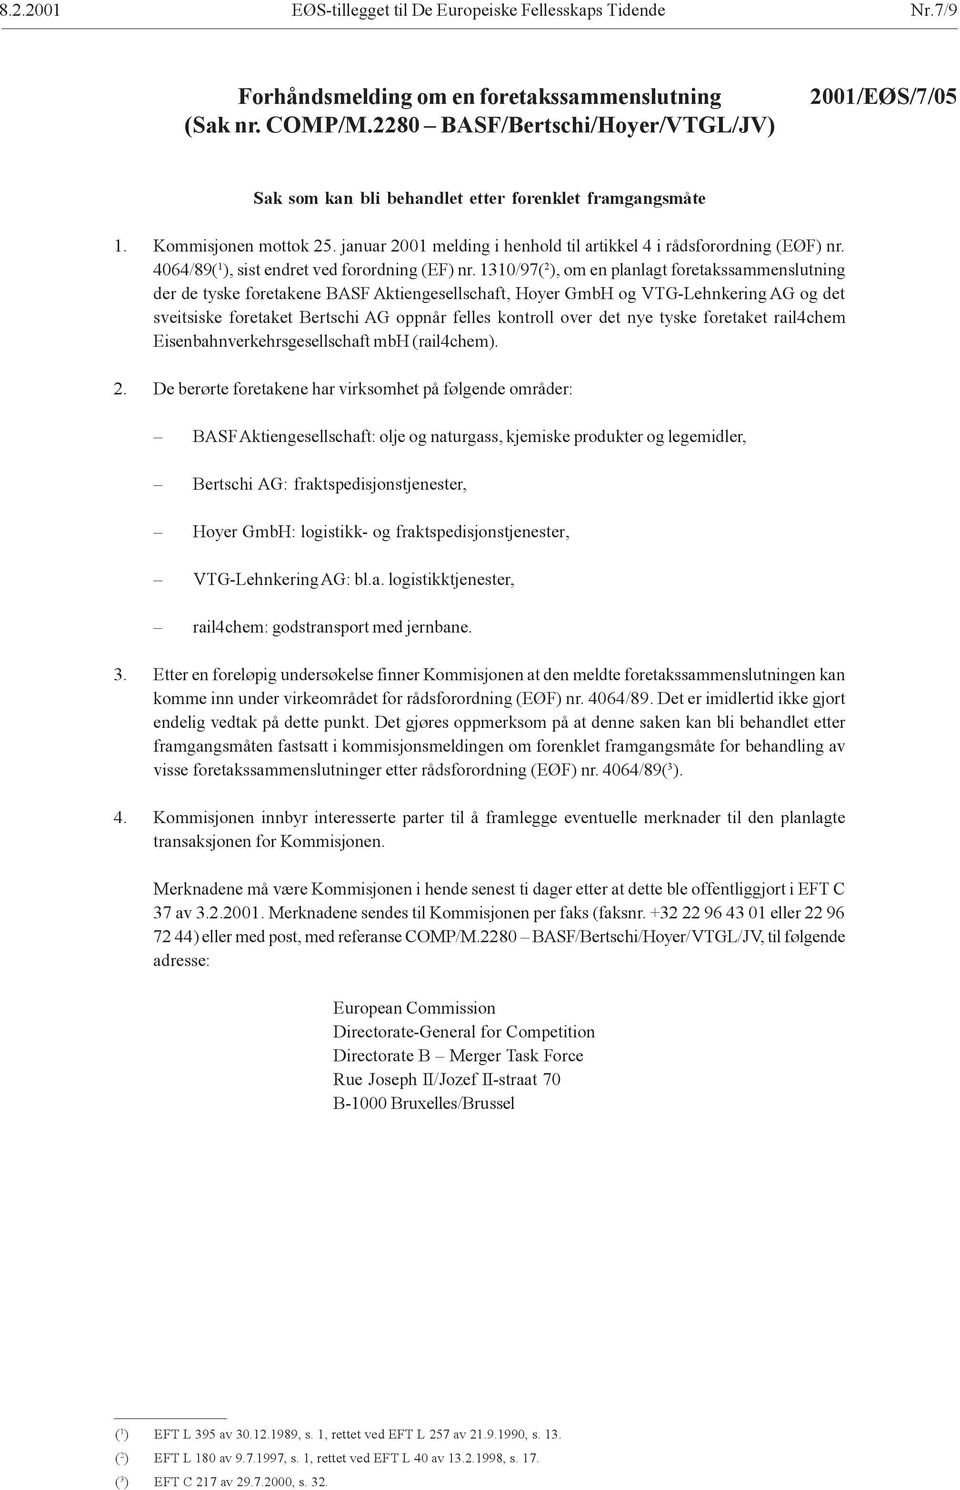 1310/97( 2 ), om en planlagt foretakssammenslutning der de tyske foretakene BASF Aktiengesellschaft, Hoyer GmbH og VTG-Lehnkering AG og det sveitsiske foretaket Bertschi AG oppnår felles kontroll